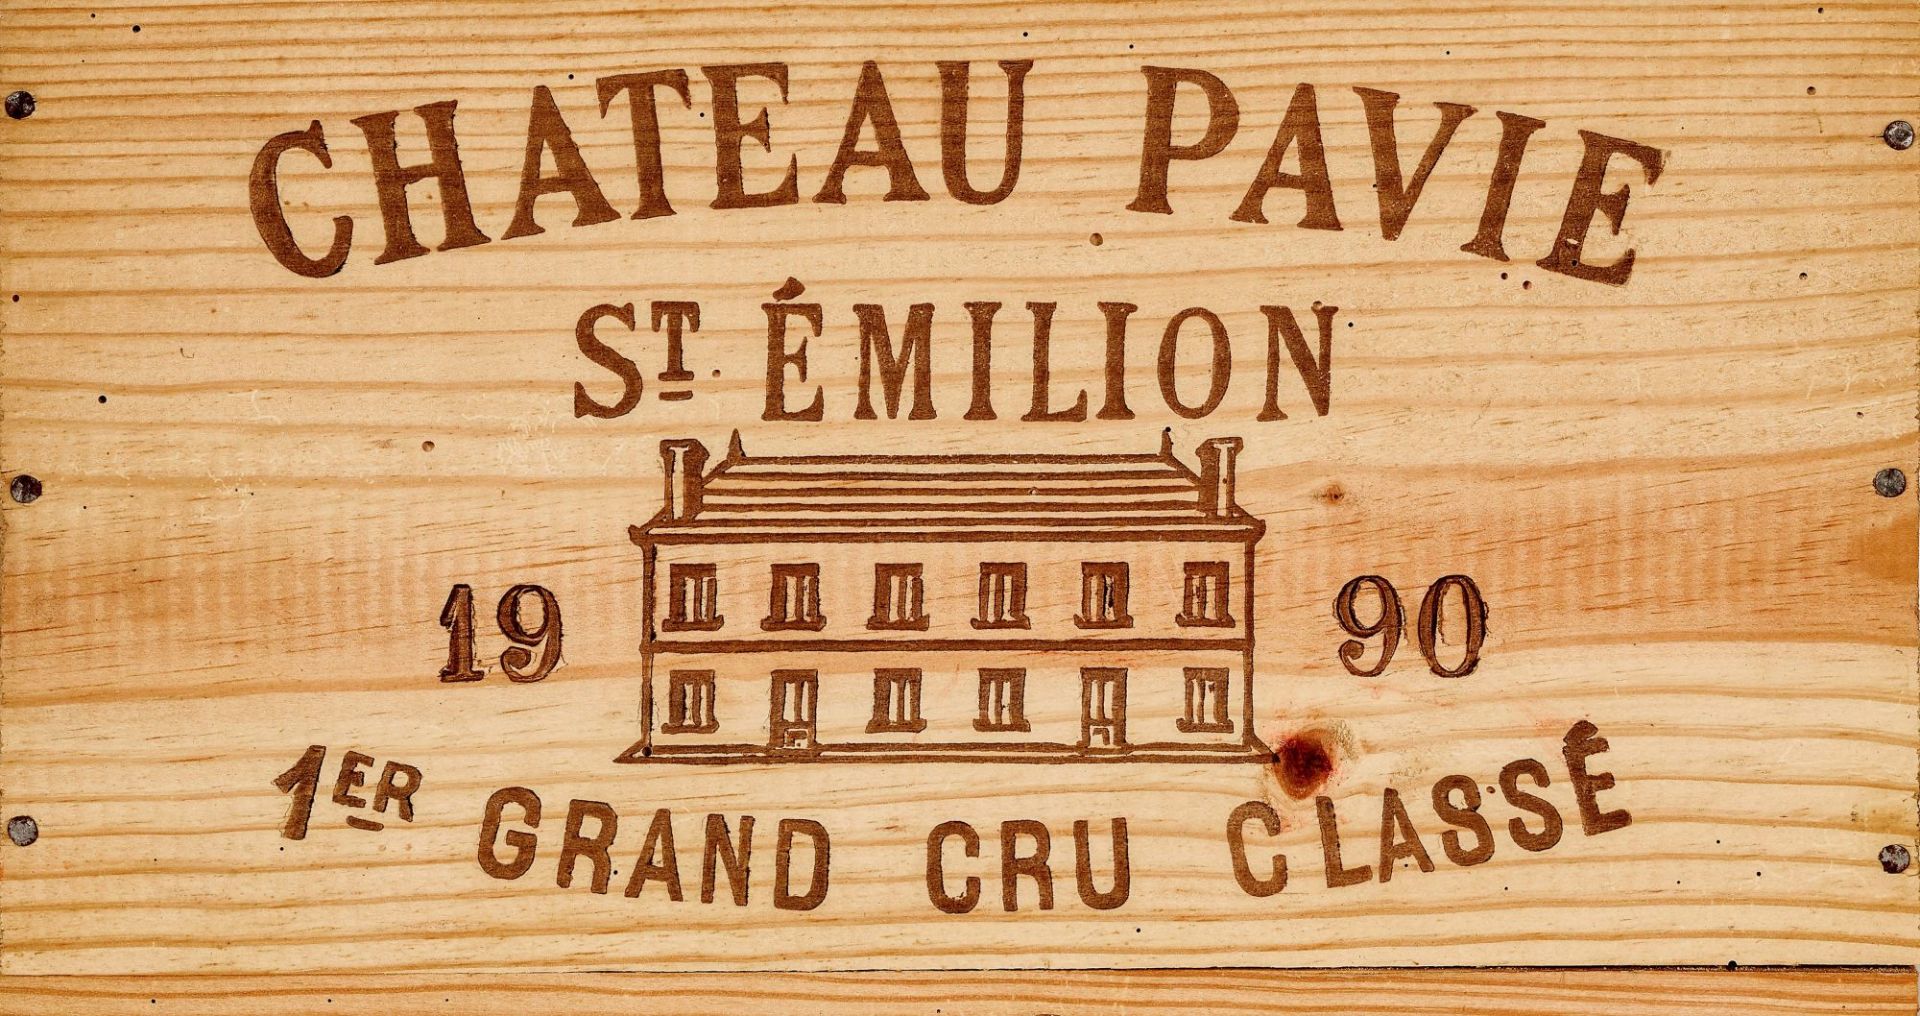 CHÂTEAU PAVIE: Saint-Émilion, Premier Grand Cru Classé, 1990.